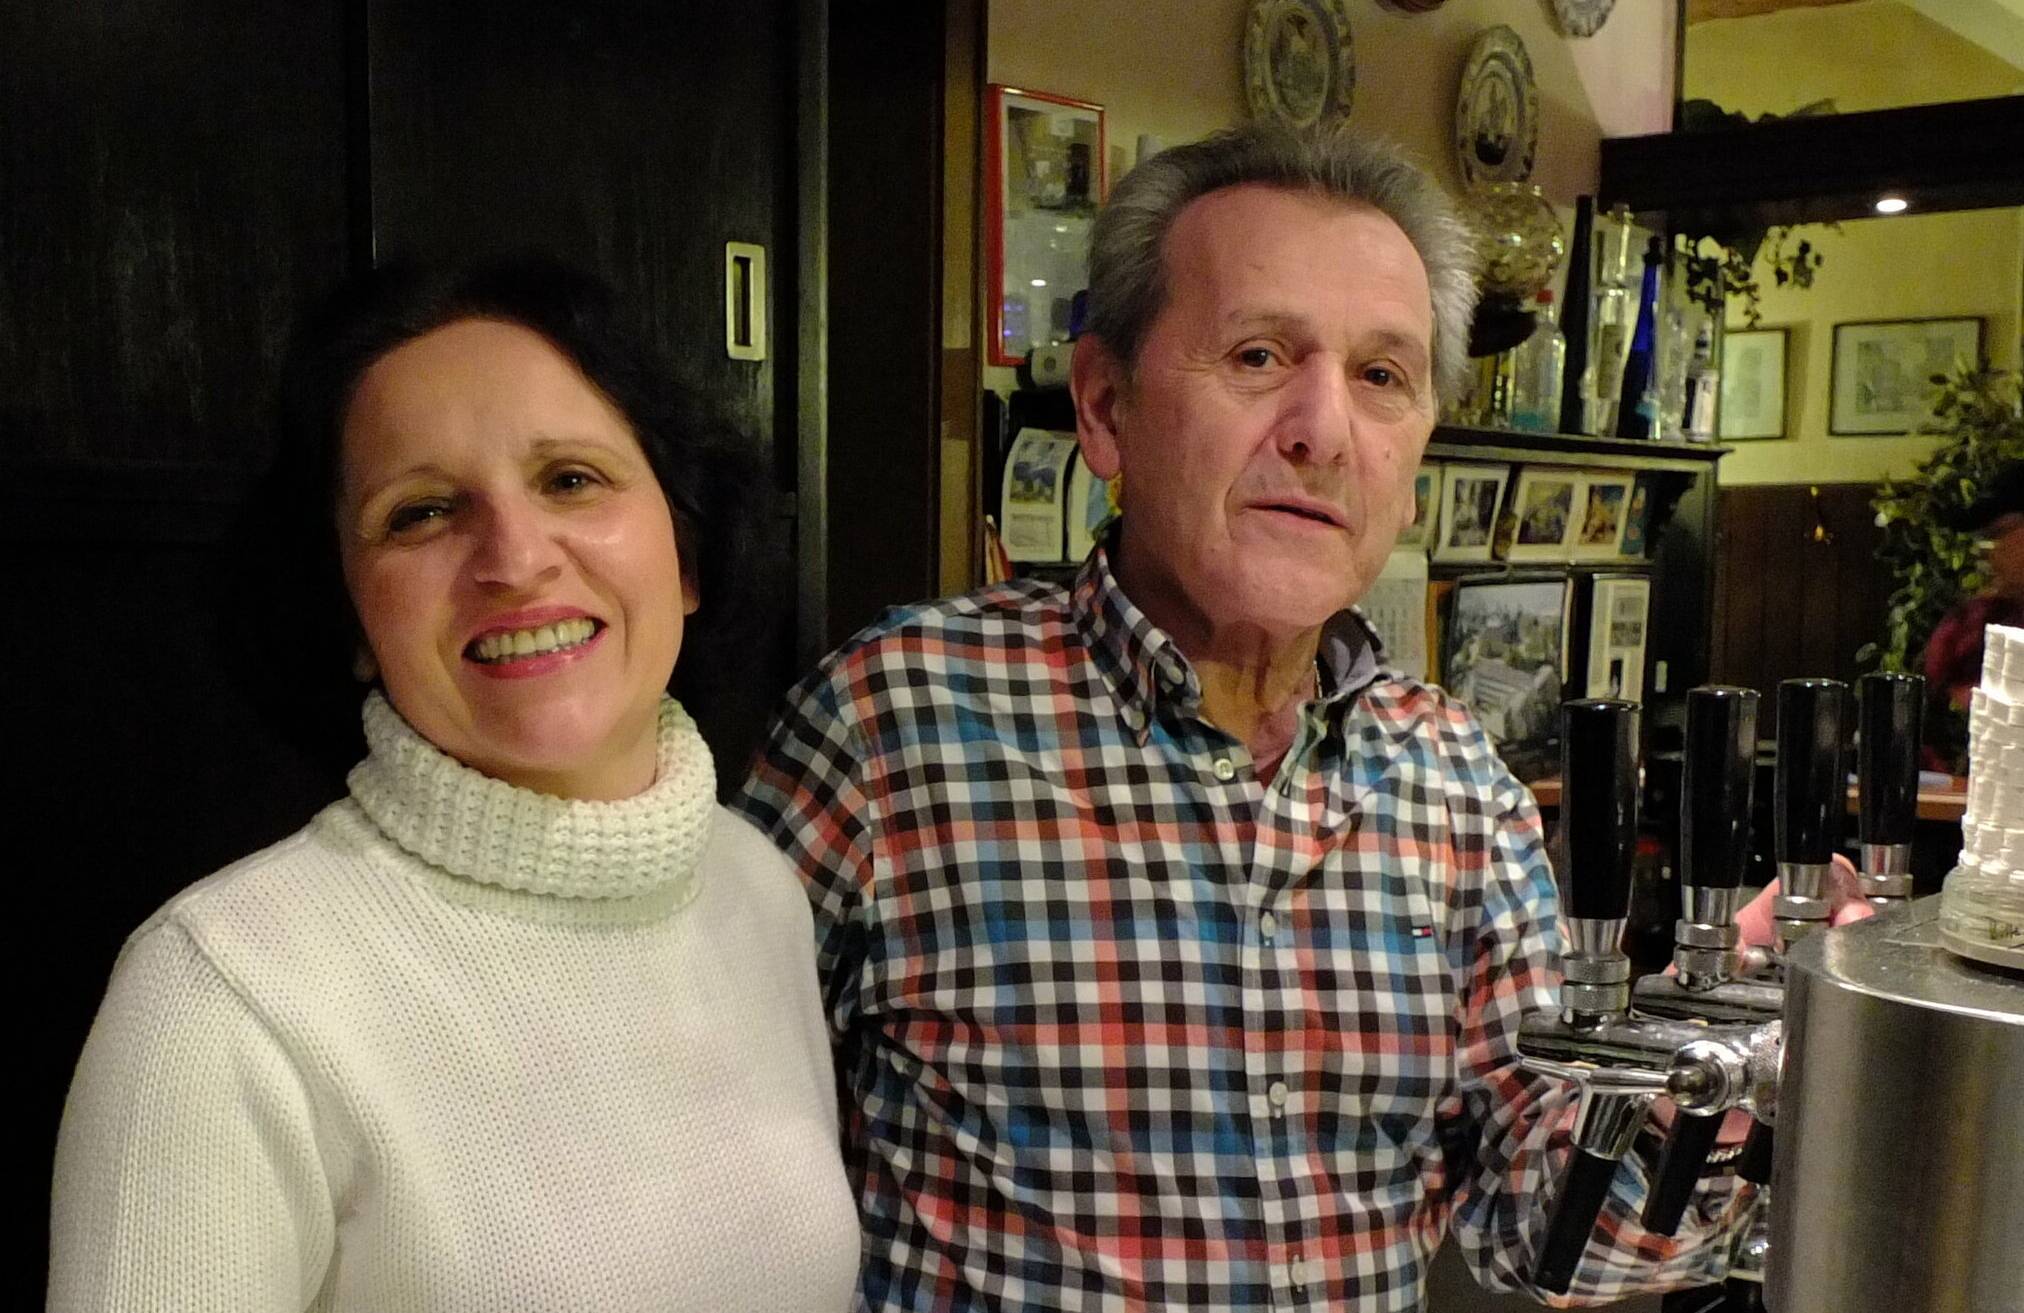  Givrill „Willi“ Tsarkovistas und seine Frau Litsa waren seit 1988 die guten Seelen in der Gaststätte Herhaus.  